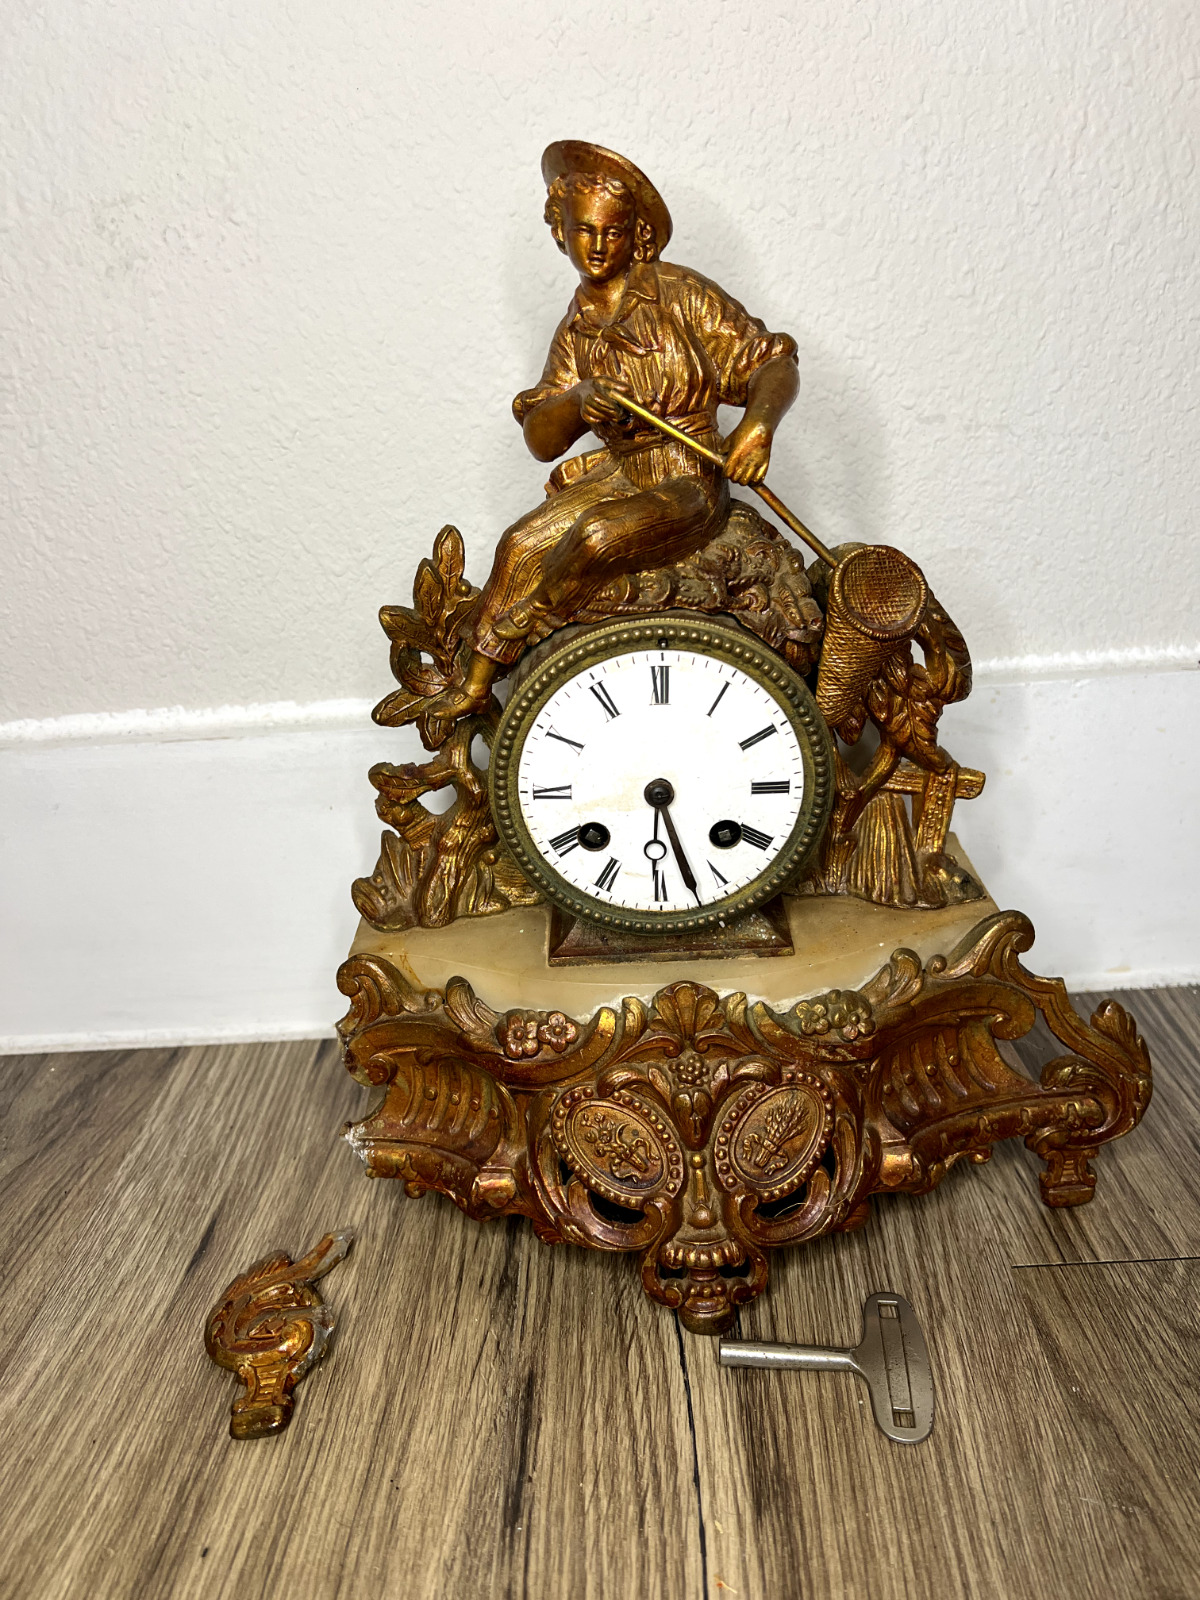 Mid 19th century Romantic Mantel Clock - Etablissement H. Molle Paris - Brass